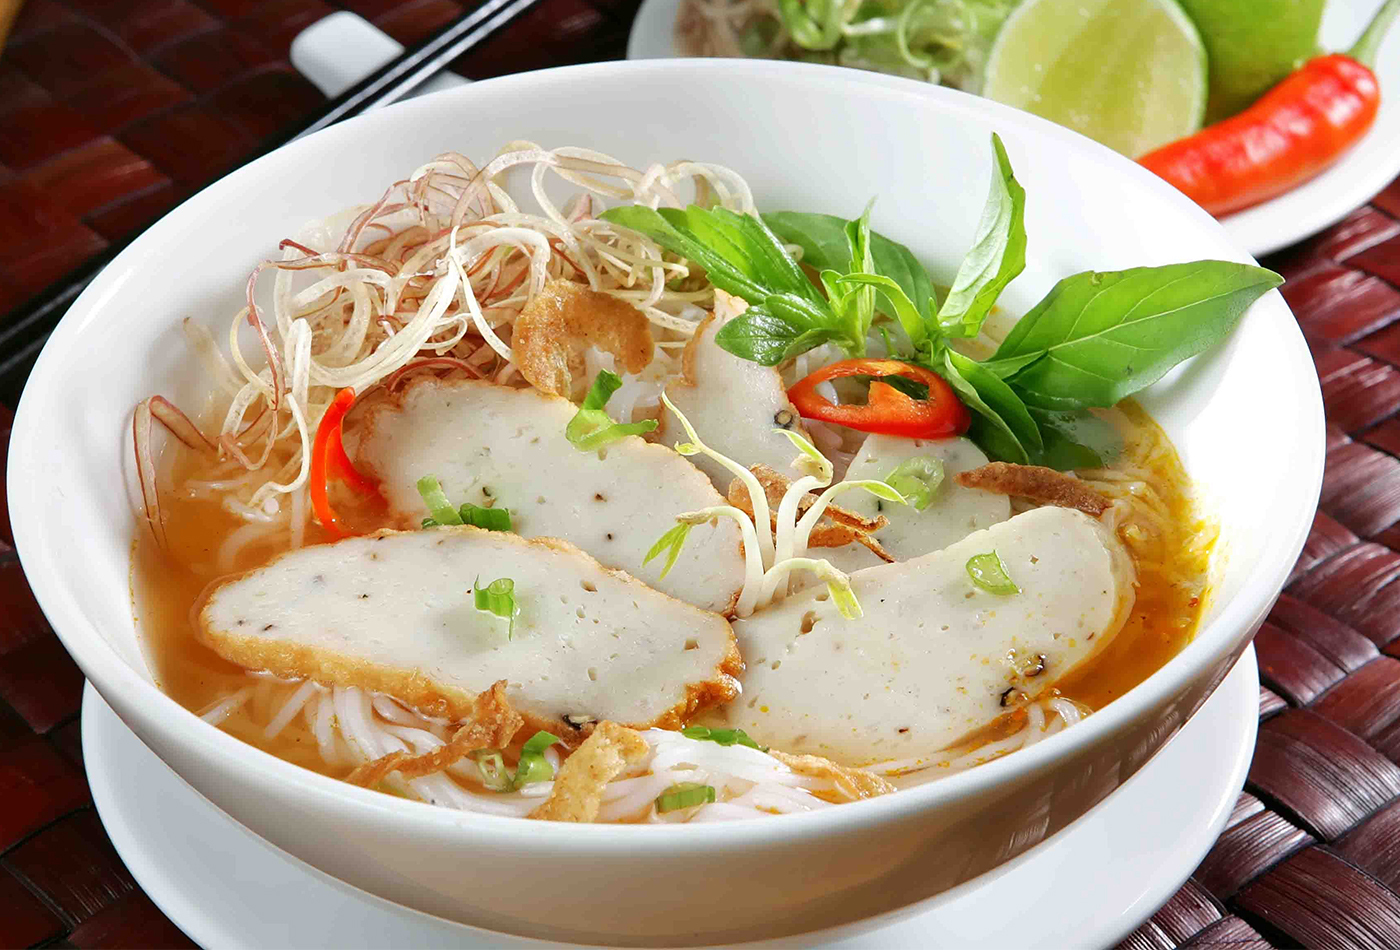 Bún chả cá đặc sản Đà Nẵng có thêm thành phần mắm ruốc có hương vị đặc trưng làm món ăn này trở nên khác biệt (Nguồn: Internet)